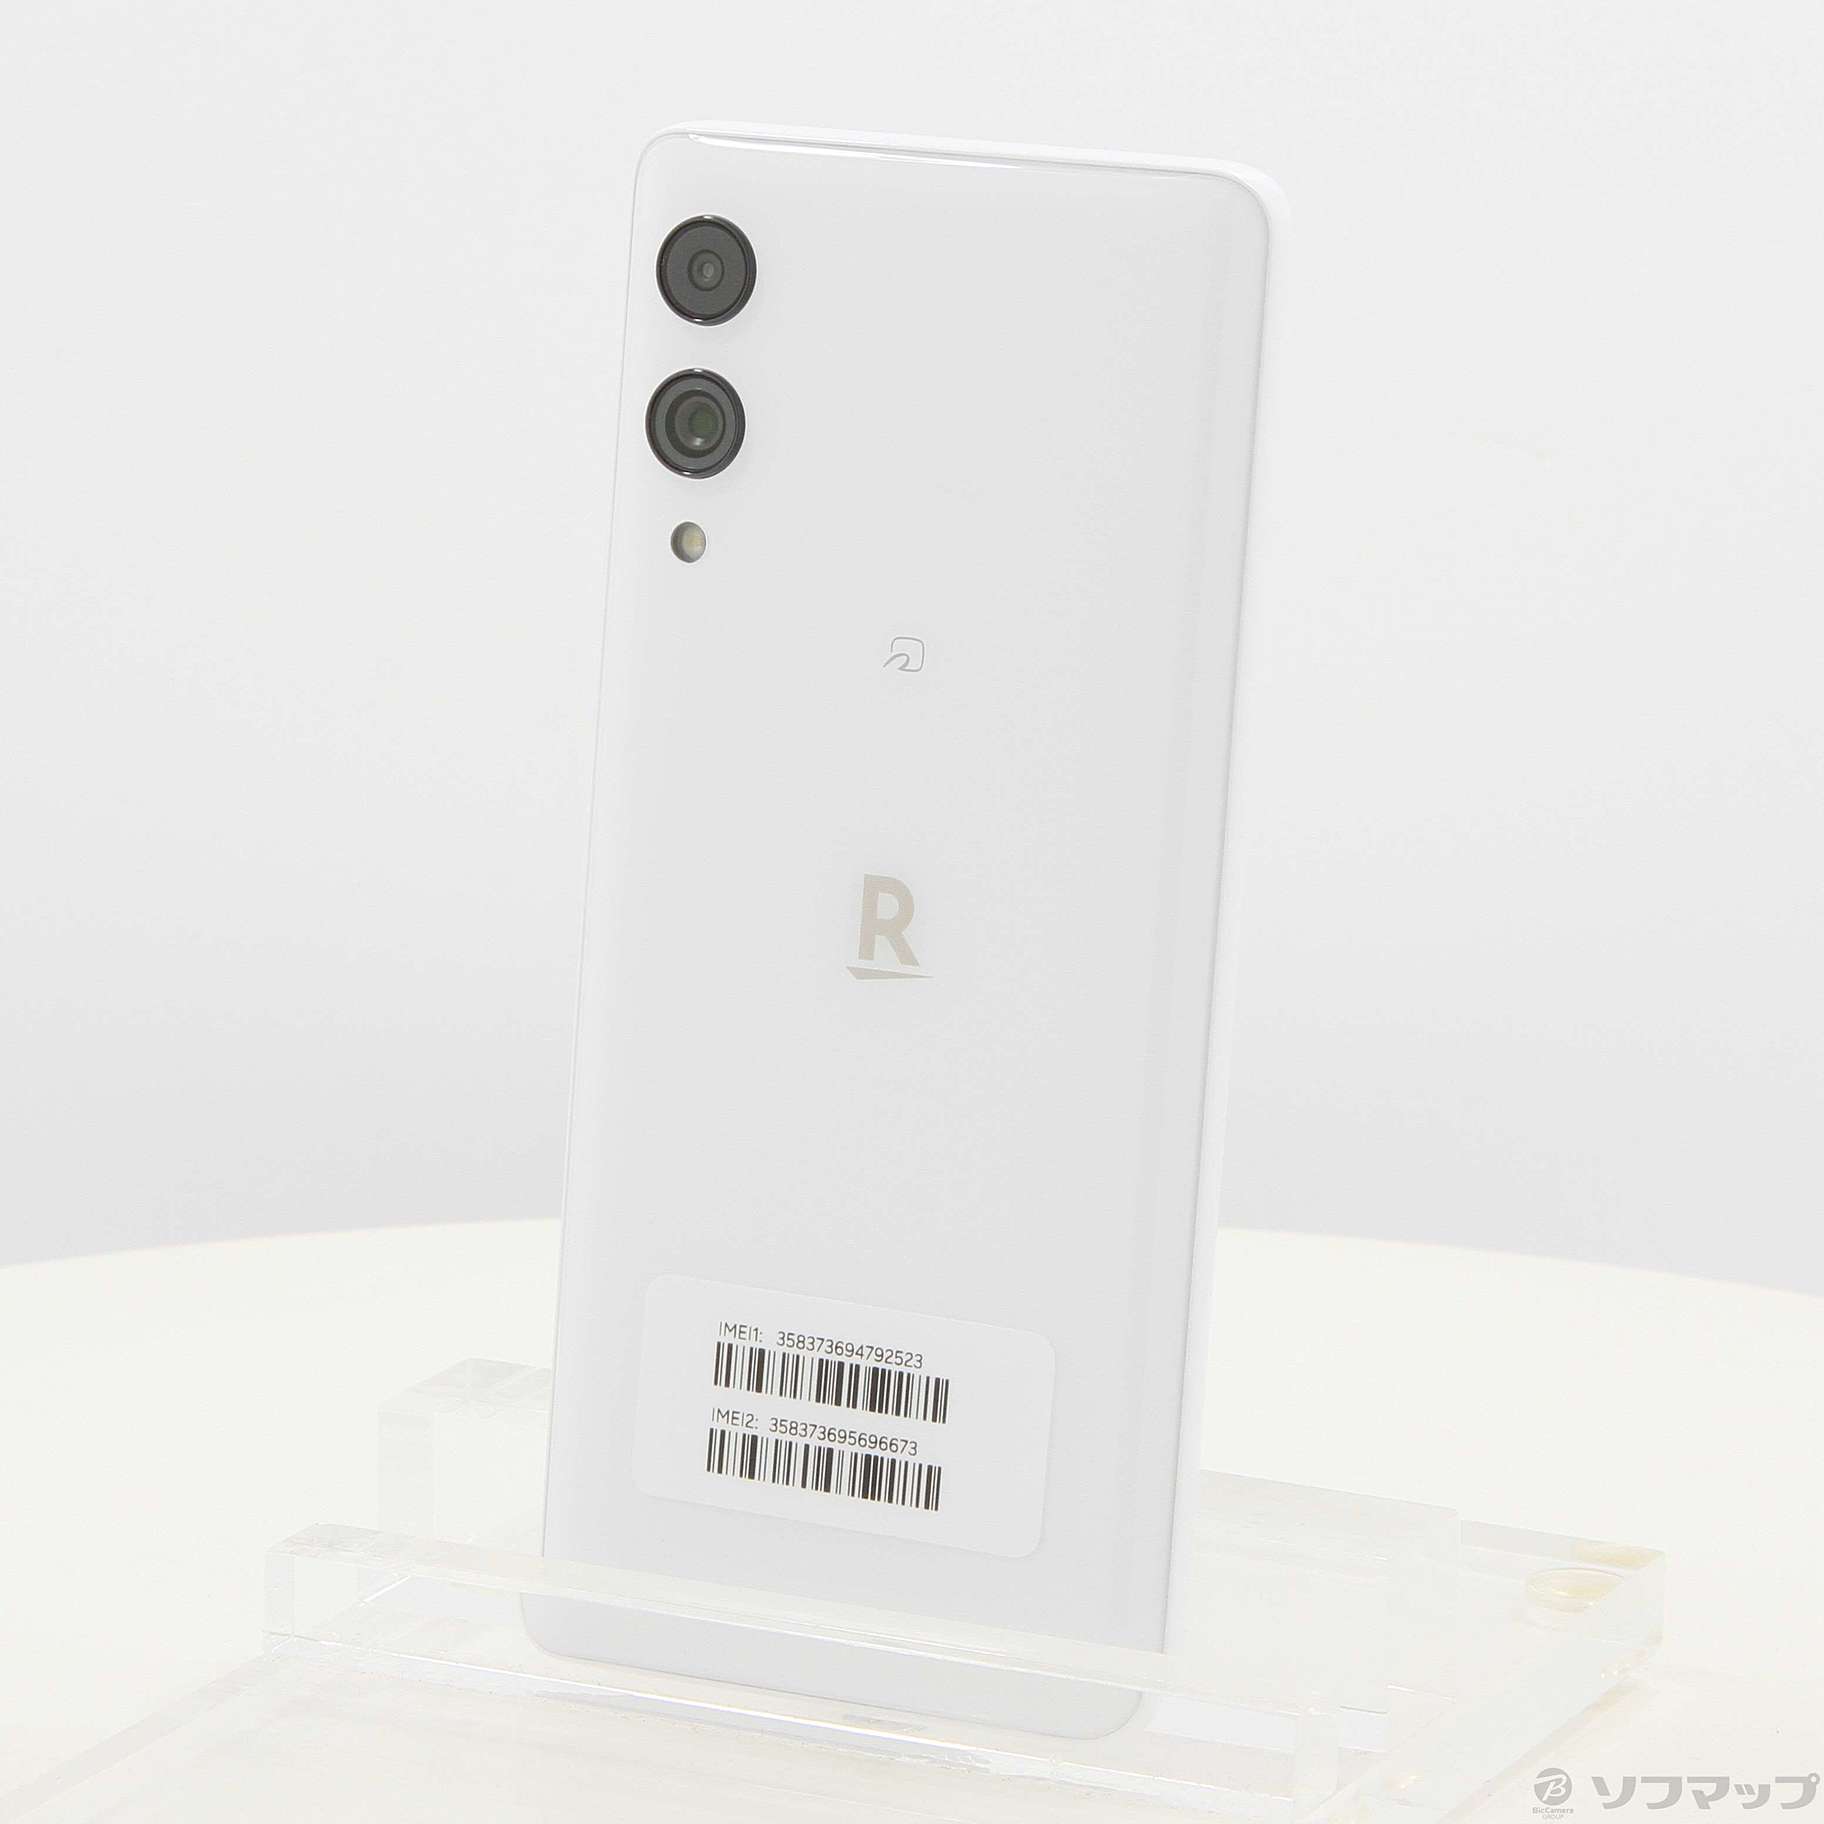 Rakuten Hand 5G ホワイト 128GB - スマートフォン本体